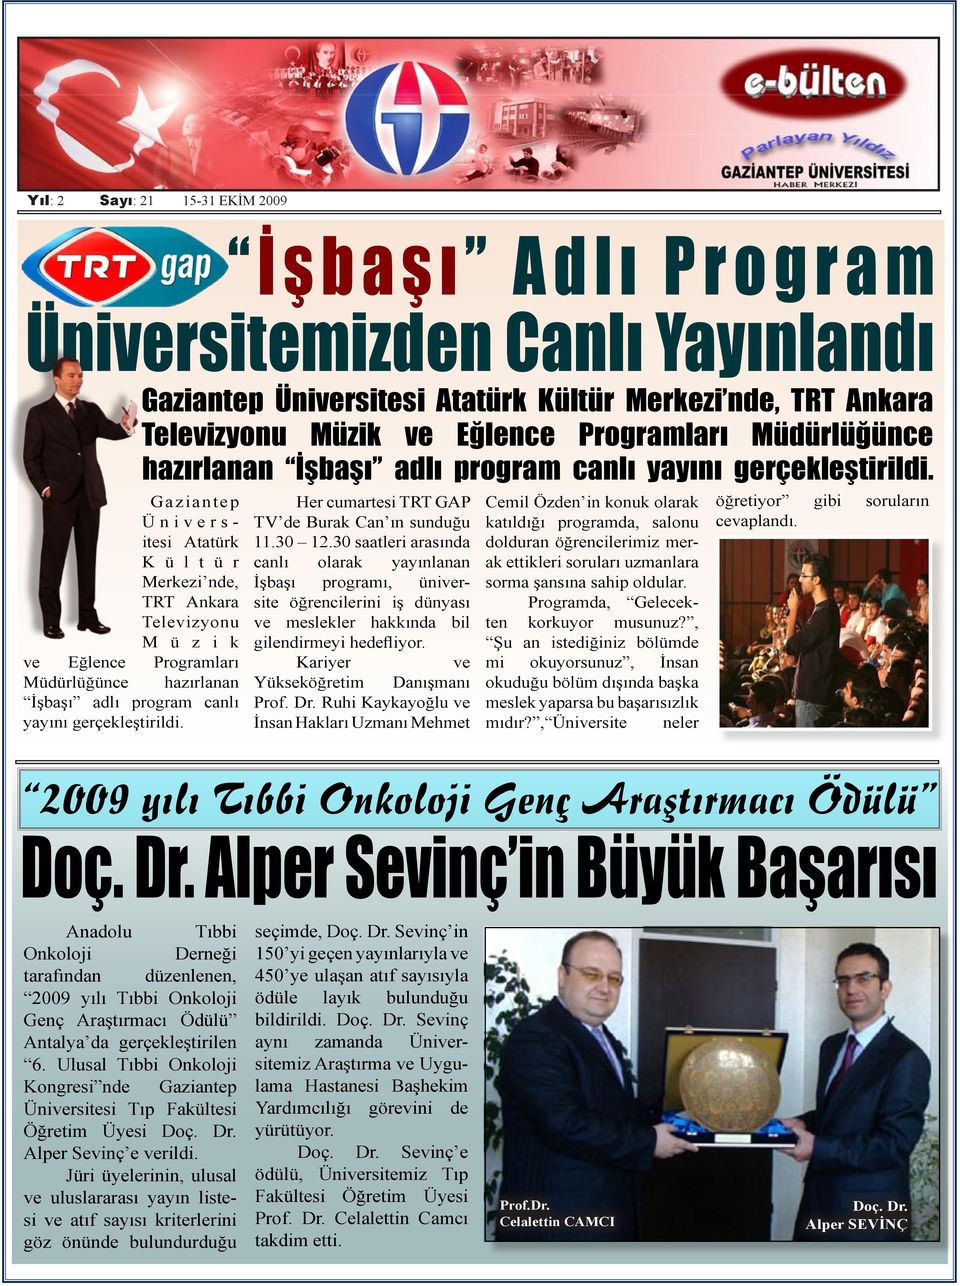 Her cumartesi TRT GAP TV de Burak Can ın sunduğu 11.30 12.